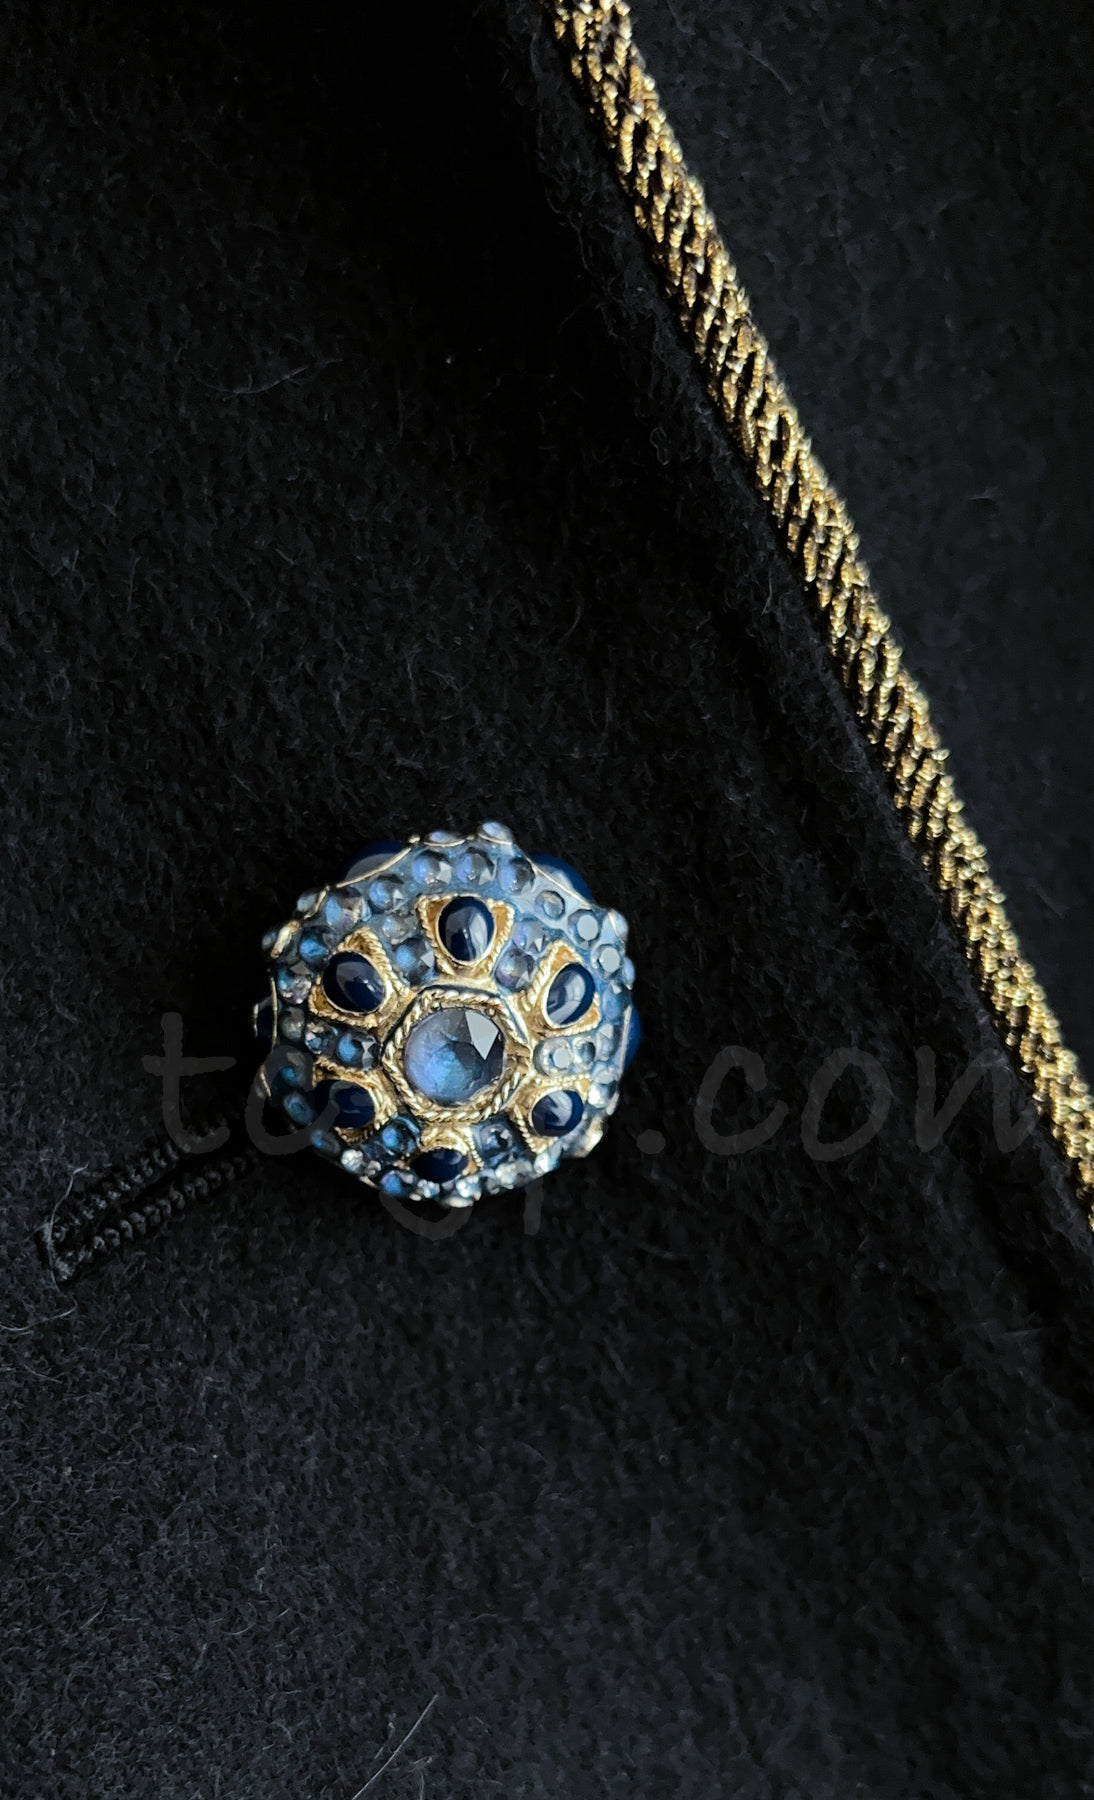 CHANEL 15PF Salzburg Black Wool Coat Gripoix Buttons 38 シャネル ザルツブルグ ブラック ウール コート グリポワ宝石ボタン 即発